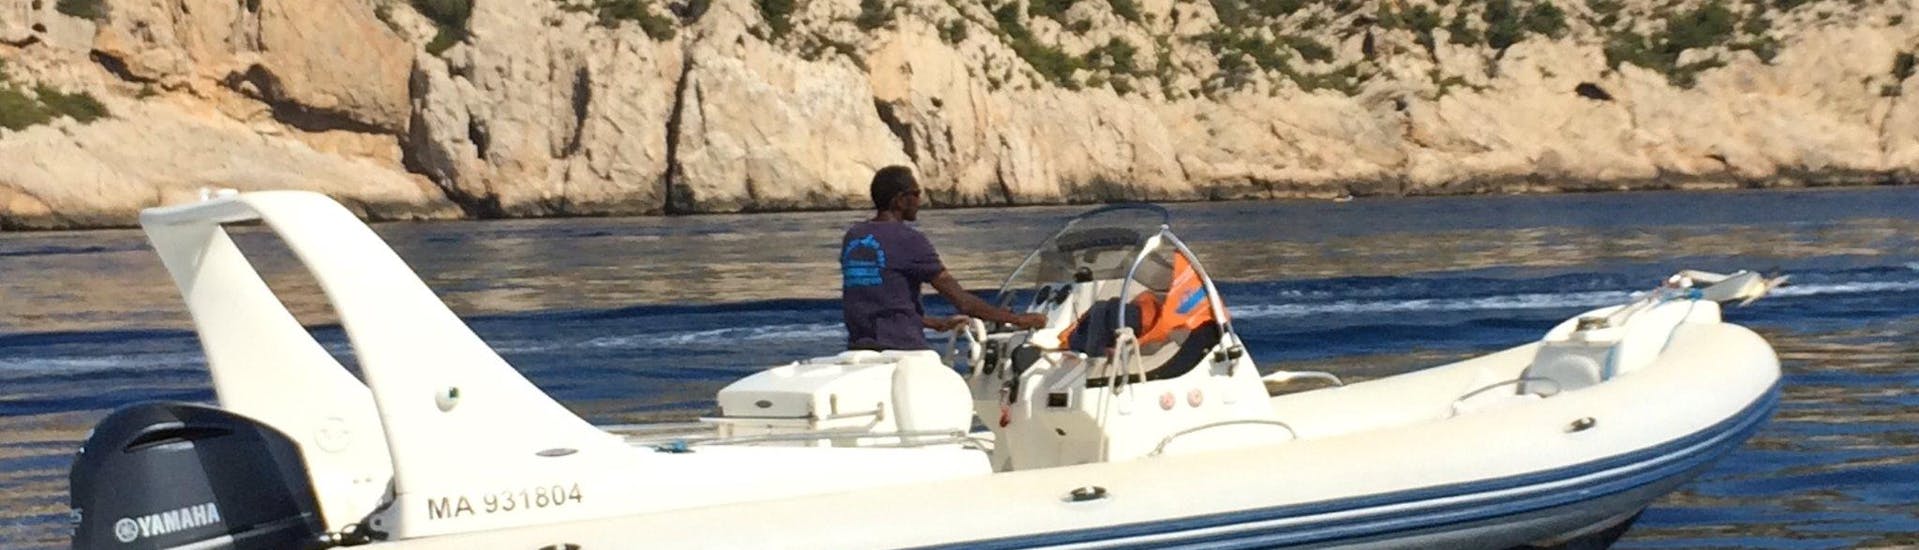 Vue du bateau lors de la Balade privée en bateau aux Calanques depuis Marseille avec Balade en Mer.